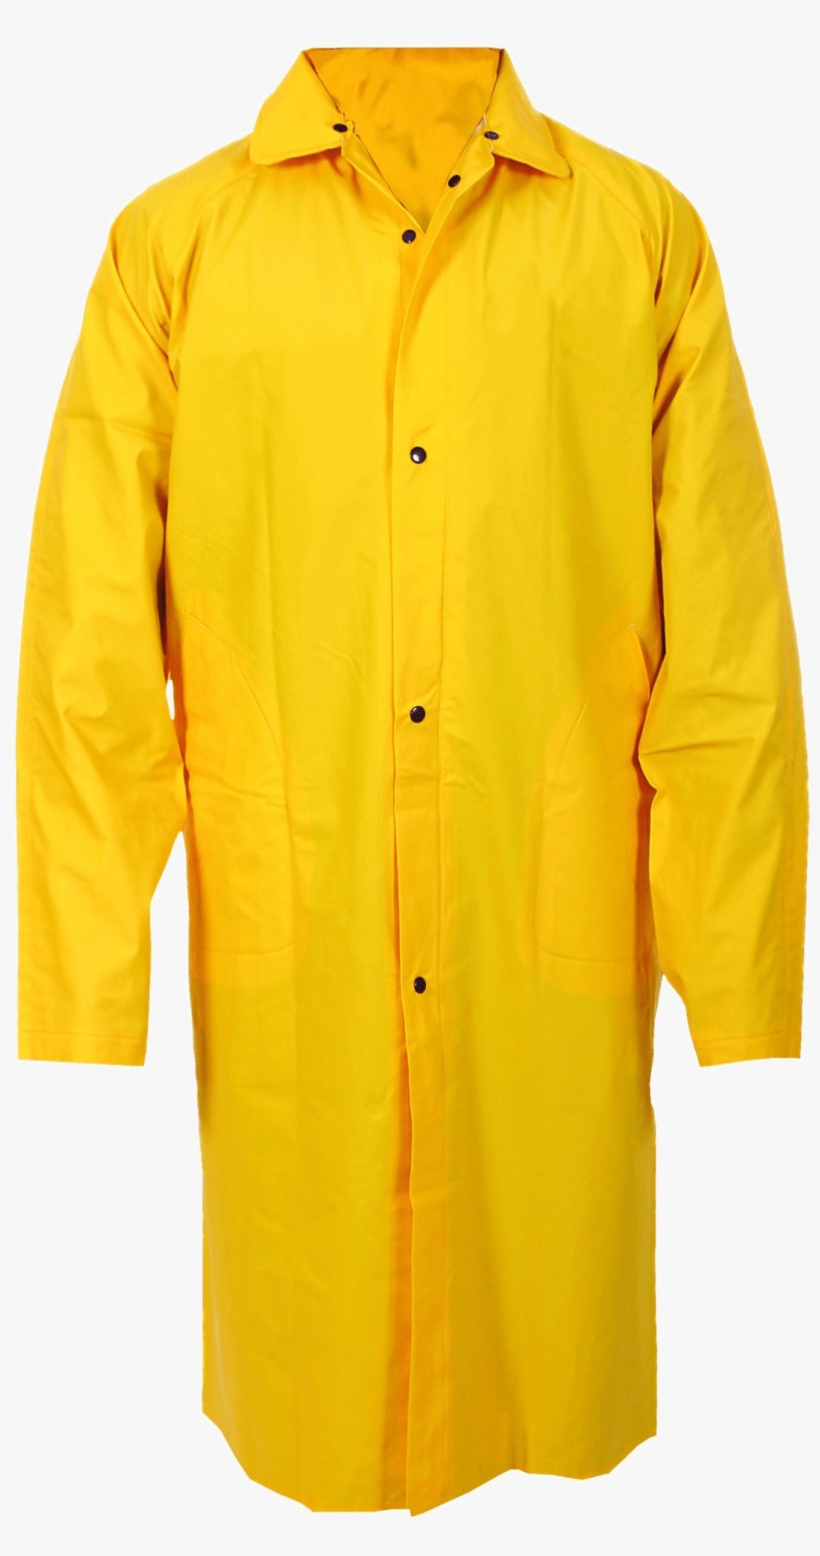 Raincoat Png Hd - Raincoat Png, transparent png #1267655